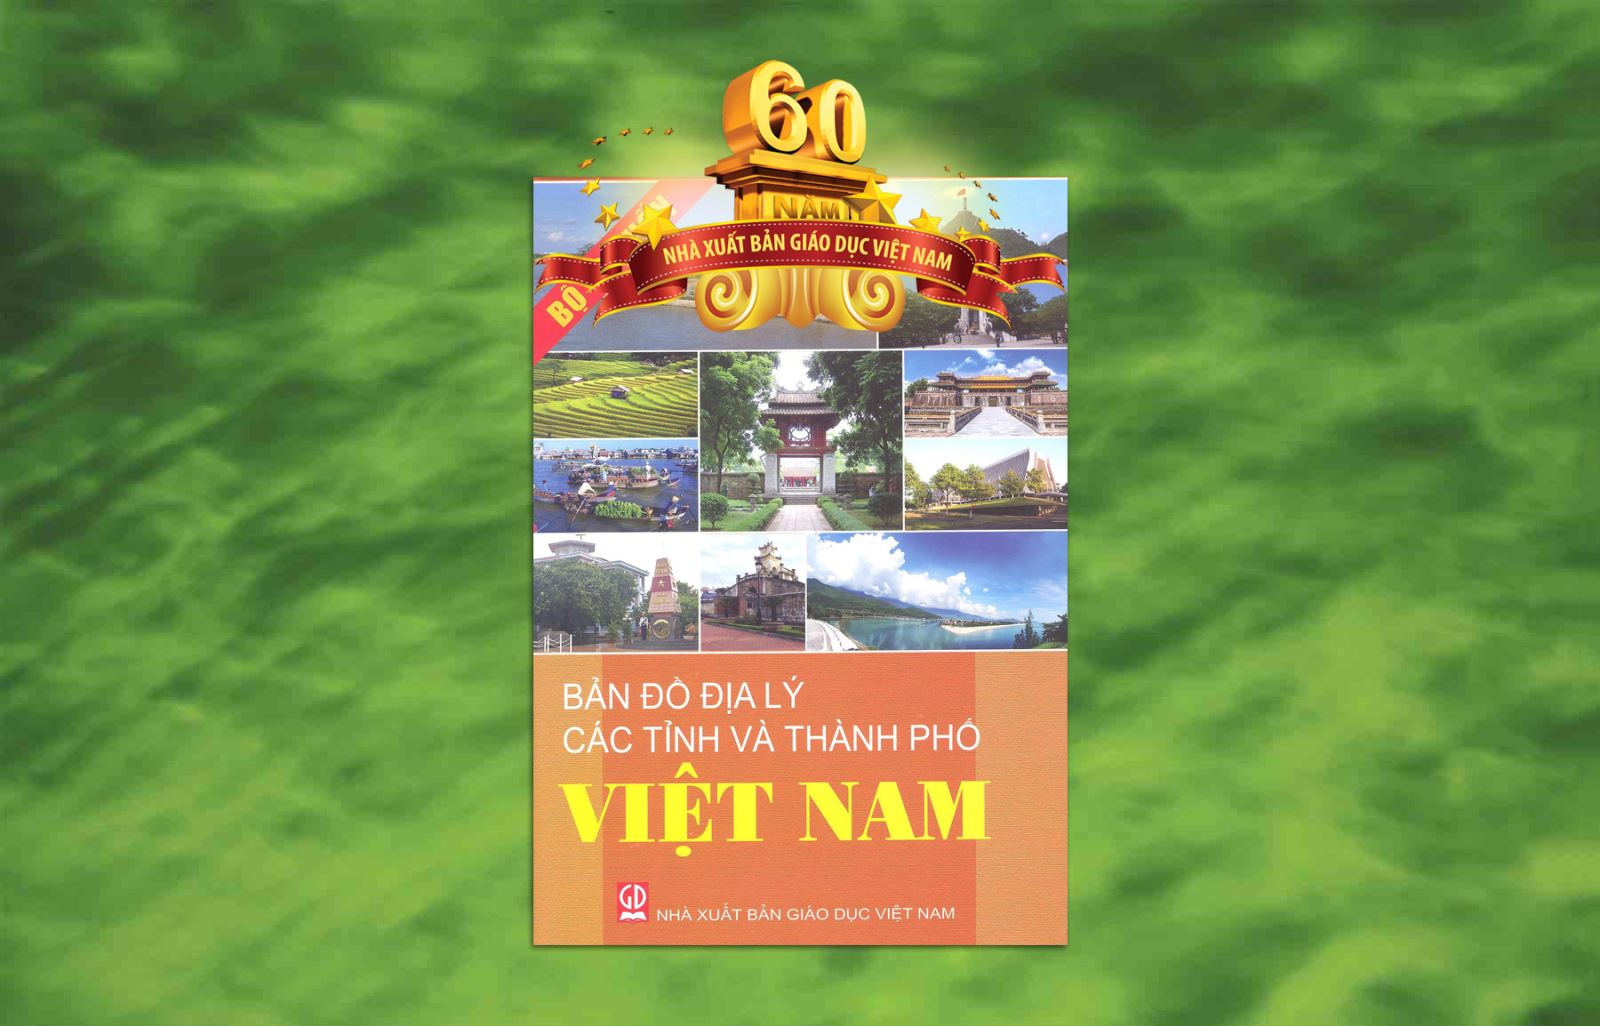 Bản đồ địa lý hành chính Việt Nam: Khám phá đồng bằng sông Cửu Long và đồi núi Bắc Bộ với Tập bản đồ Địa lý hành chính Việt Nam mới nhất. Tìm hiểu thêm về lịch sử và văn hóa nơi đây.